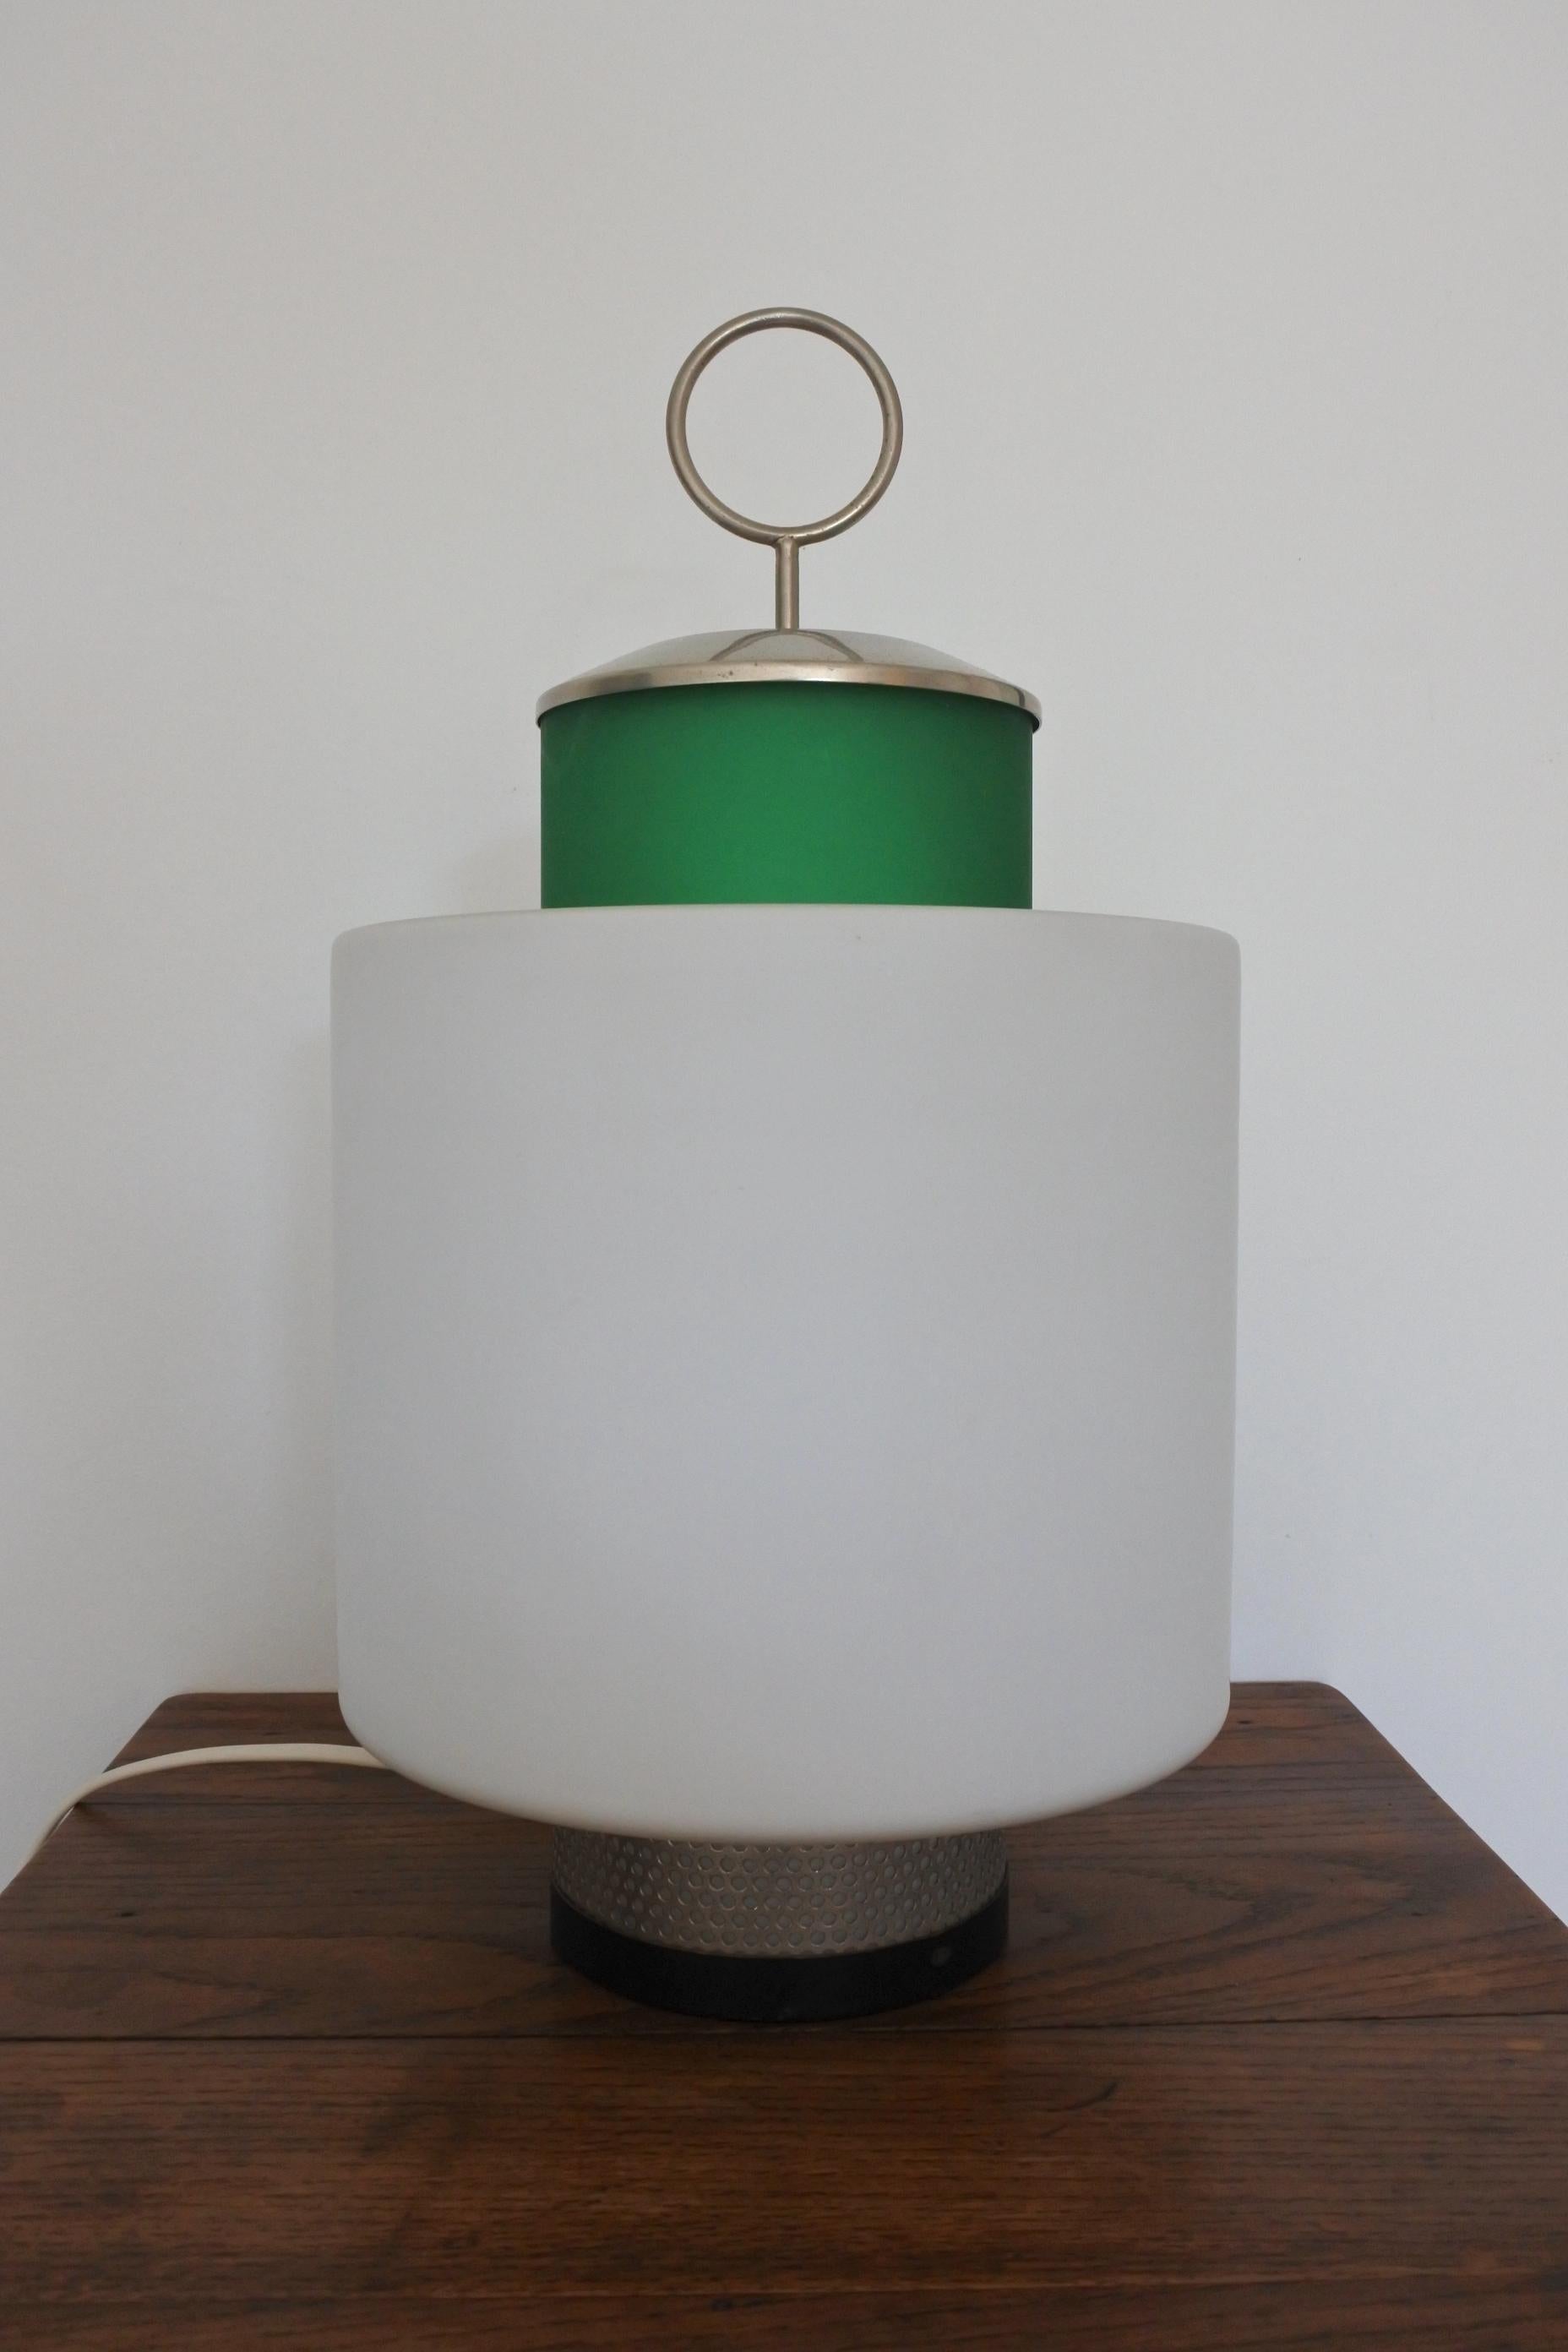 Italienische Tischleuchte der Jahrhundertmitte von Stilnovo.
Modell 8052. 
Entworfen und hergestellt in Italien im Jahr 1958.
Hergestellt aus grün getöntem Glas, Opalglas, galvanisiertem Messing und lackiertem Messing.
Originaletikett